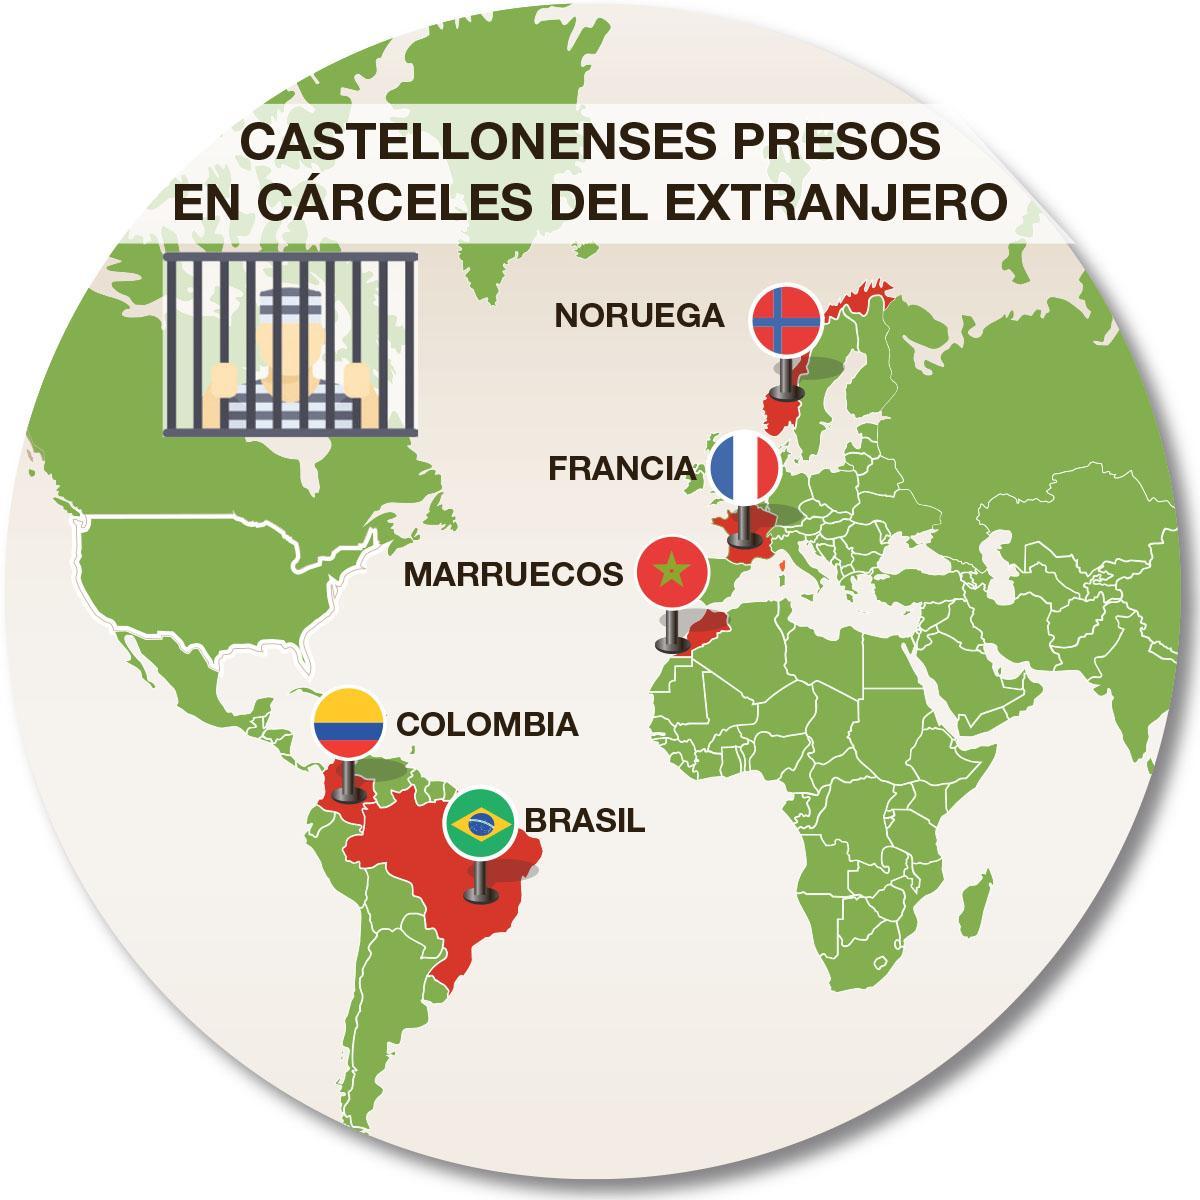 Mapa de los países donde están presos los cinco castellonenses.